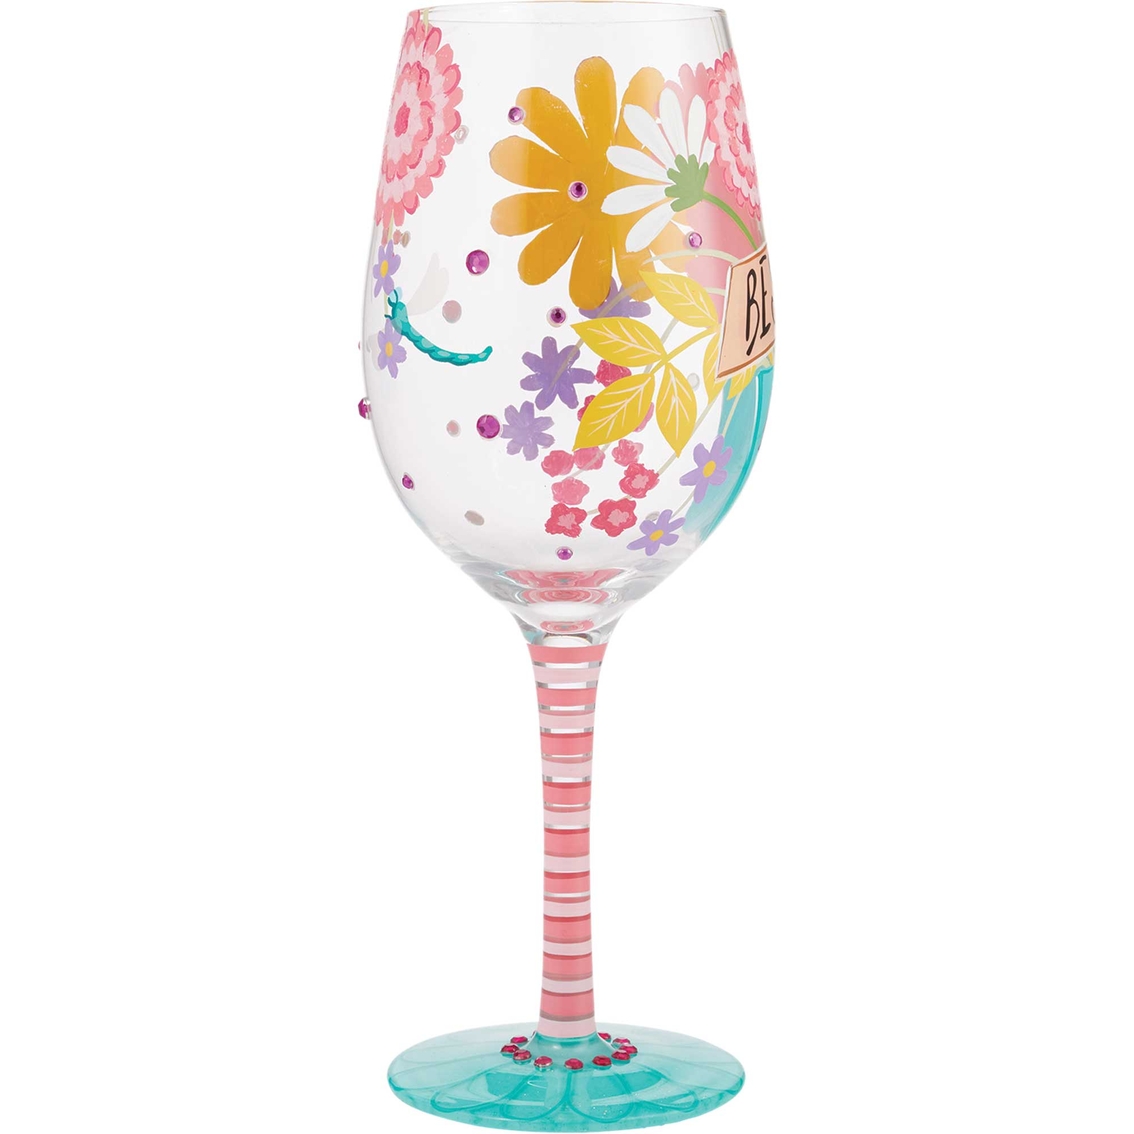 Lolita Best Mom Ever Wine Glass - Image 2 of 2